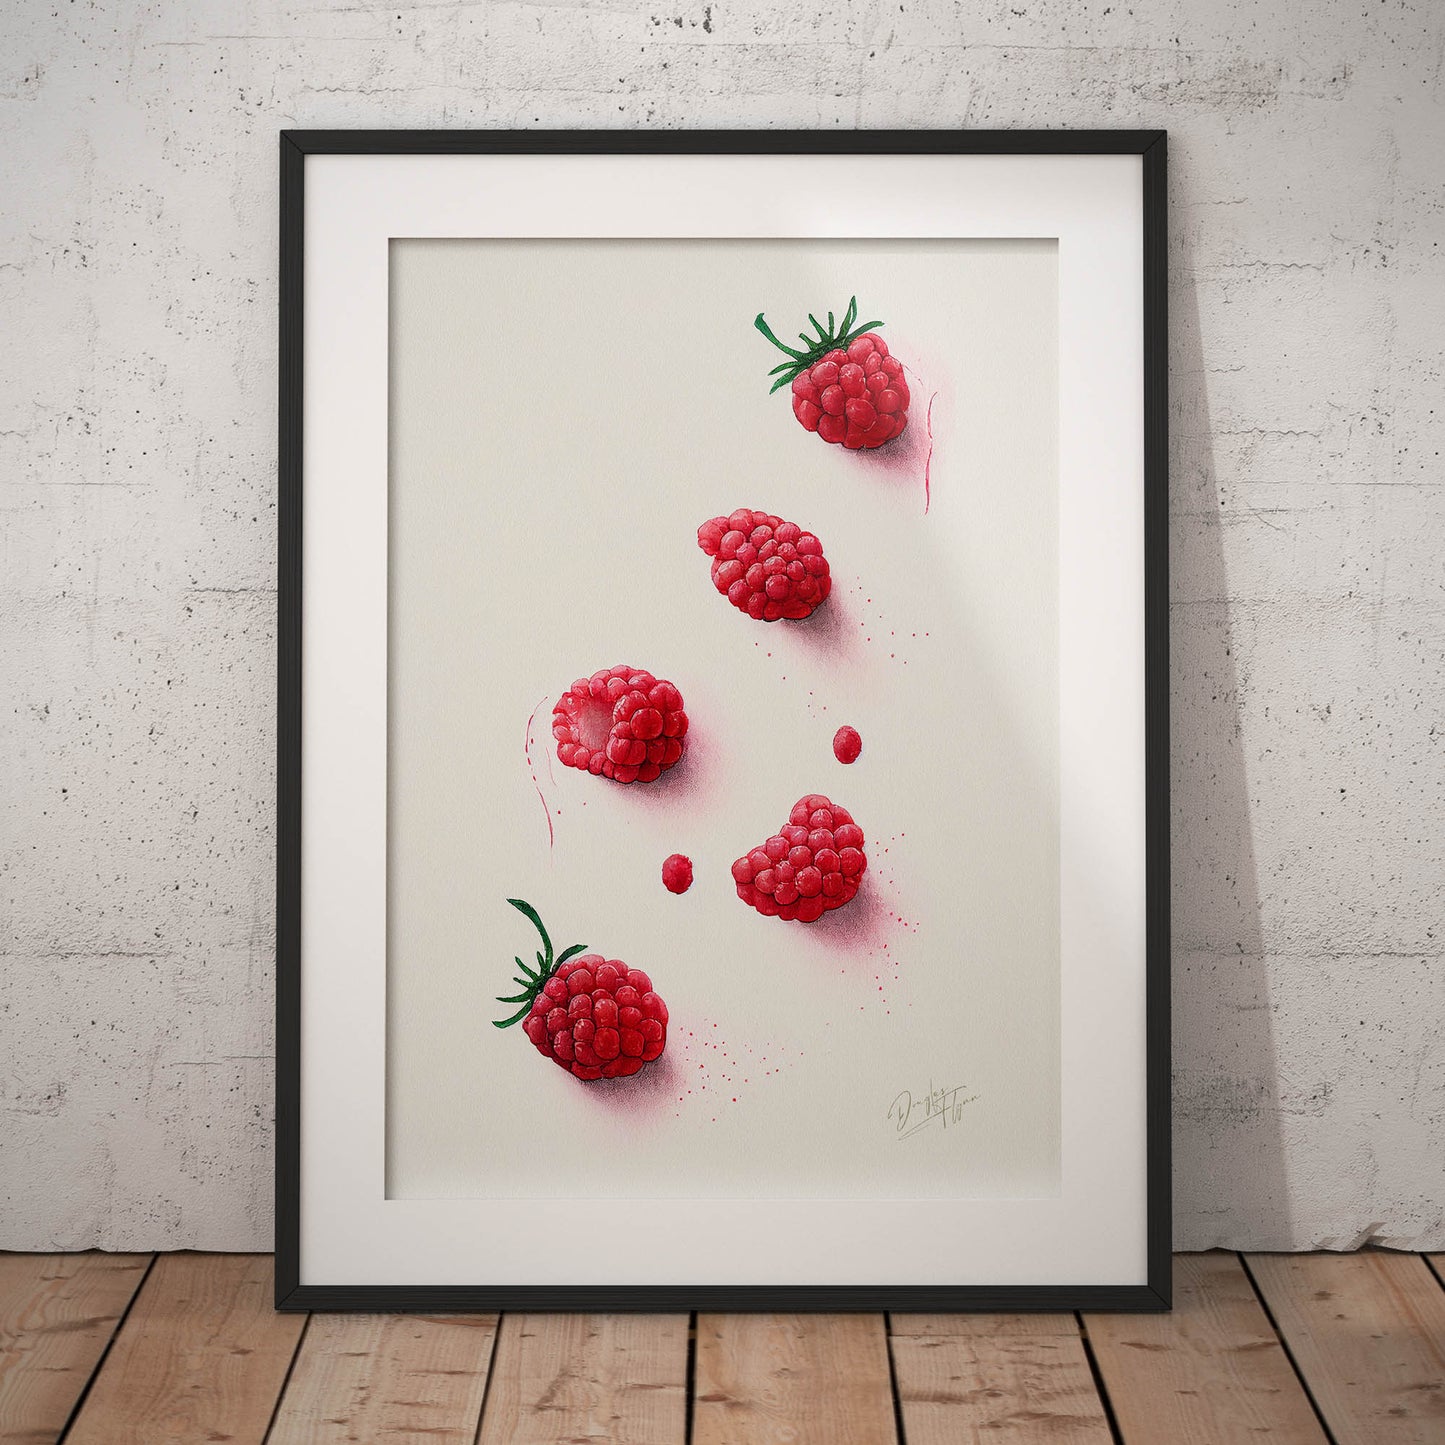 »Rasberries Watercolor Moods« retro poster